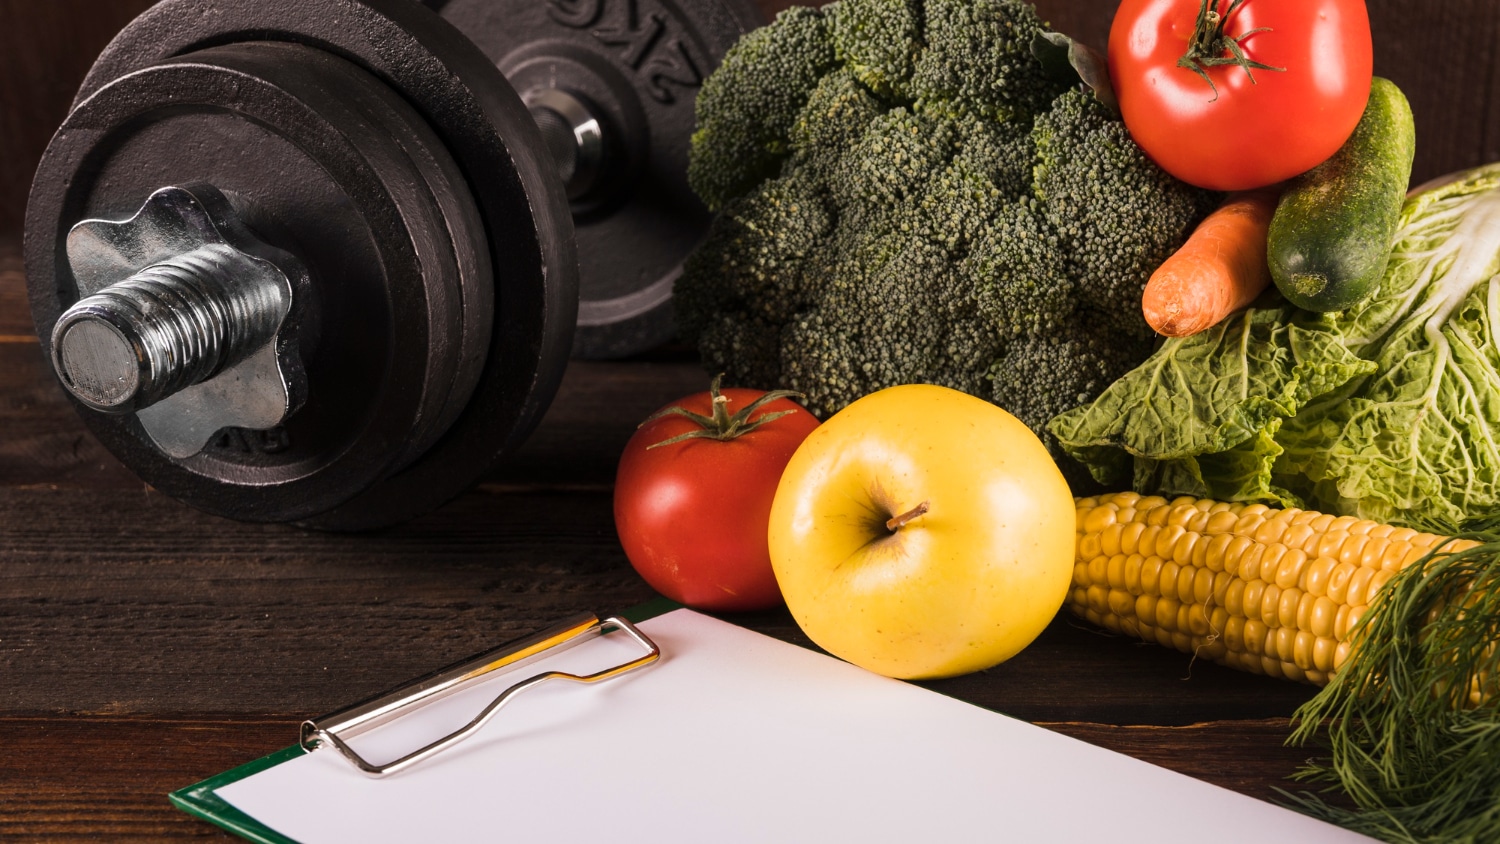 Des légumes et fruits frais, un poids et un presse-papier vide.